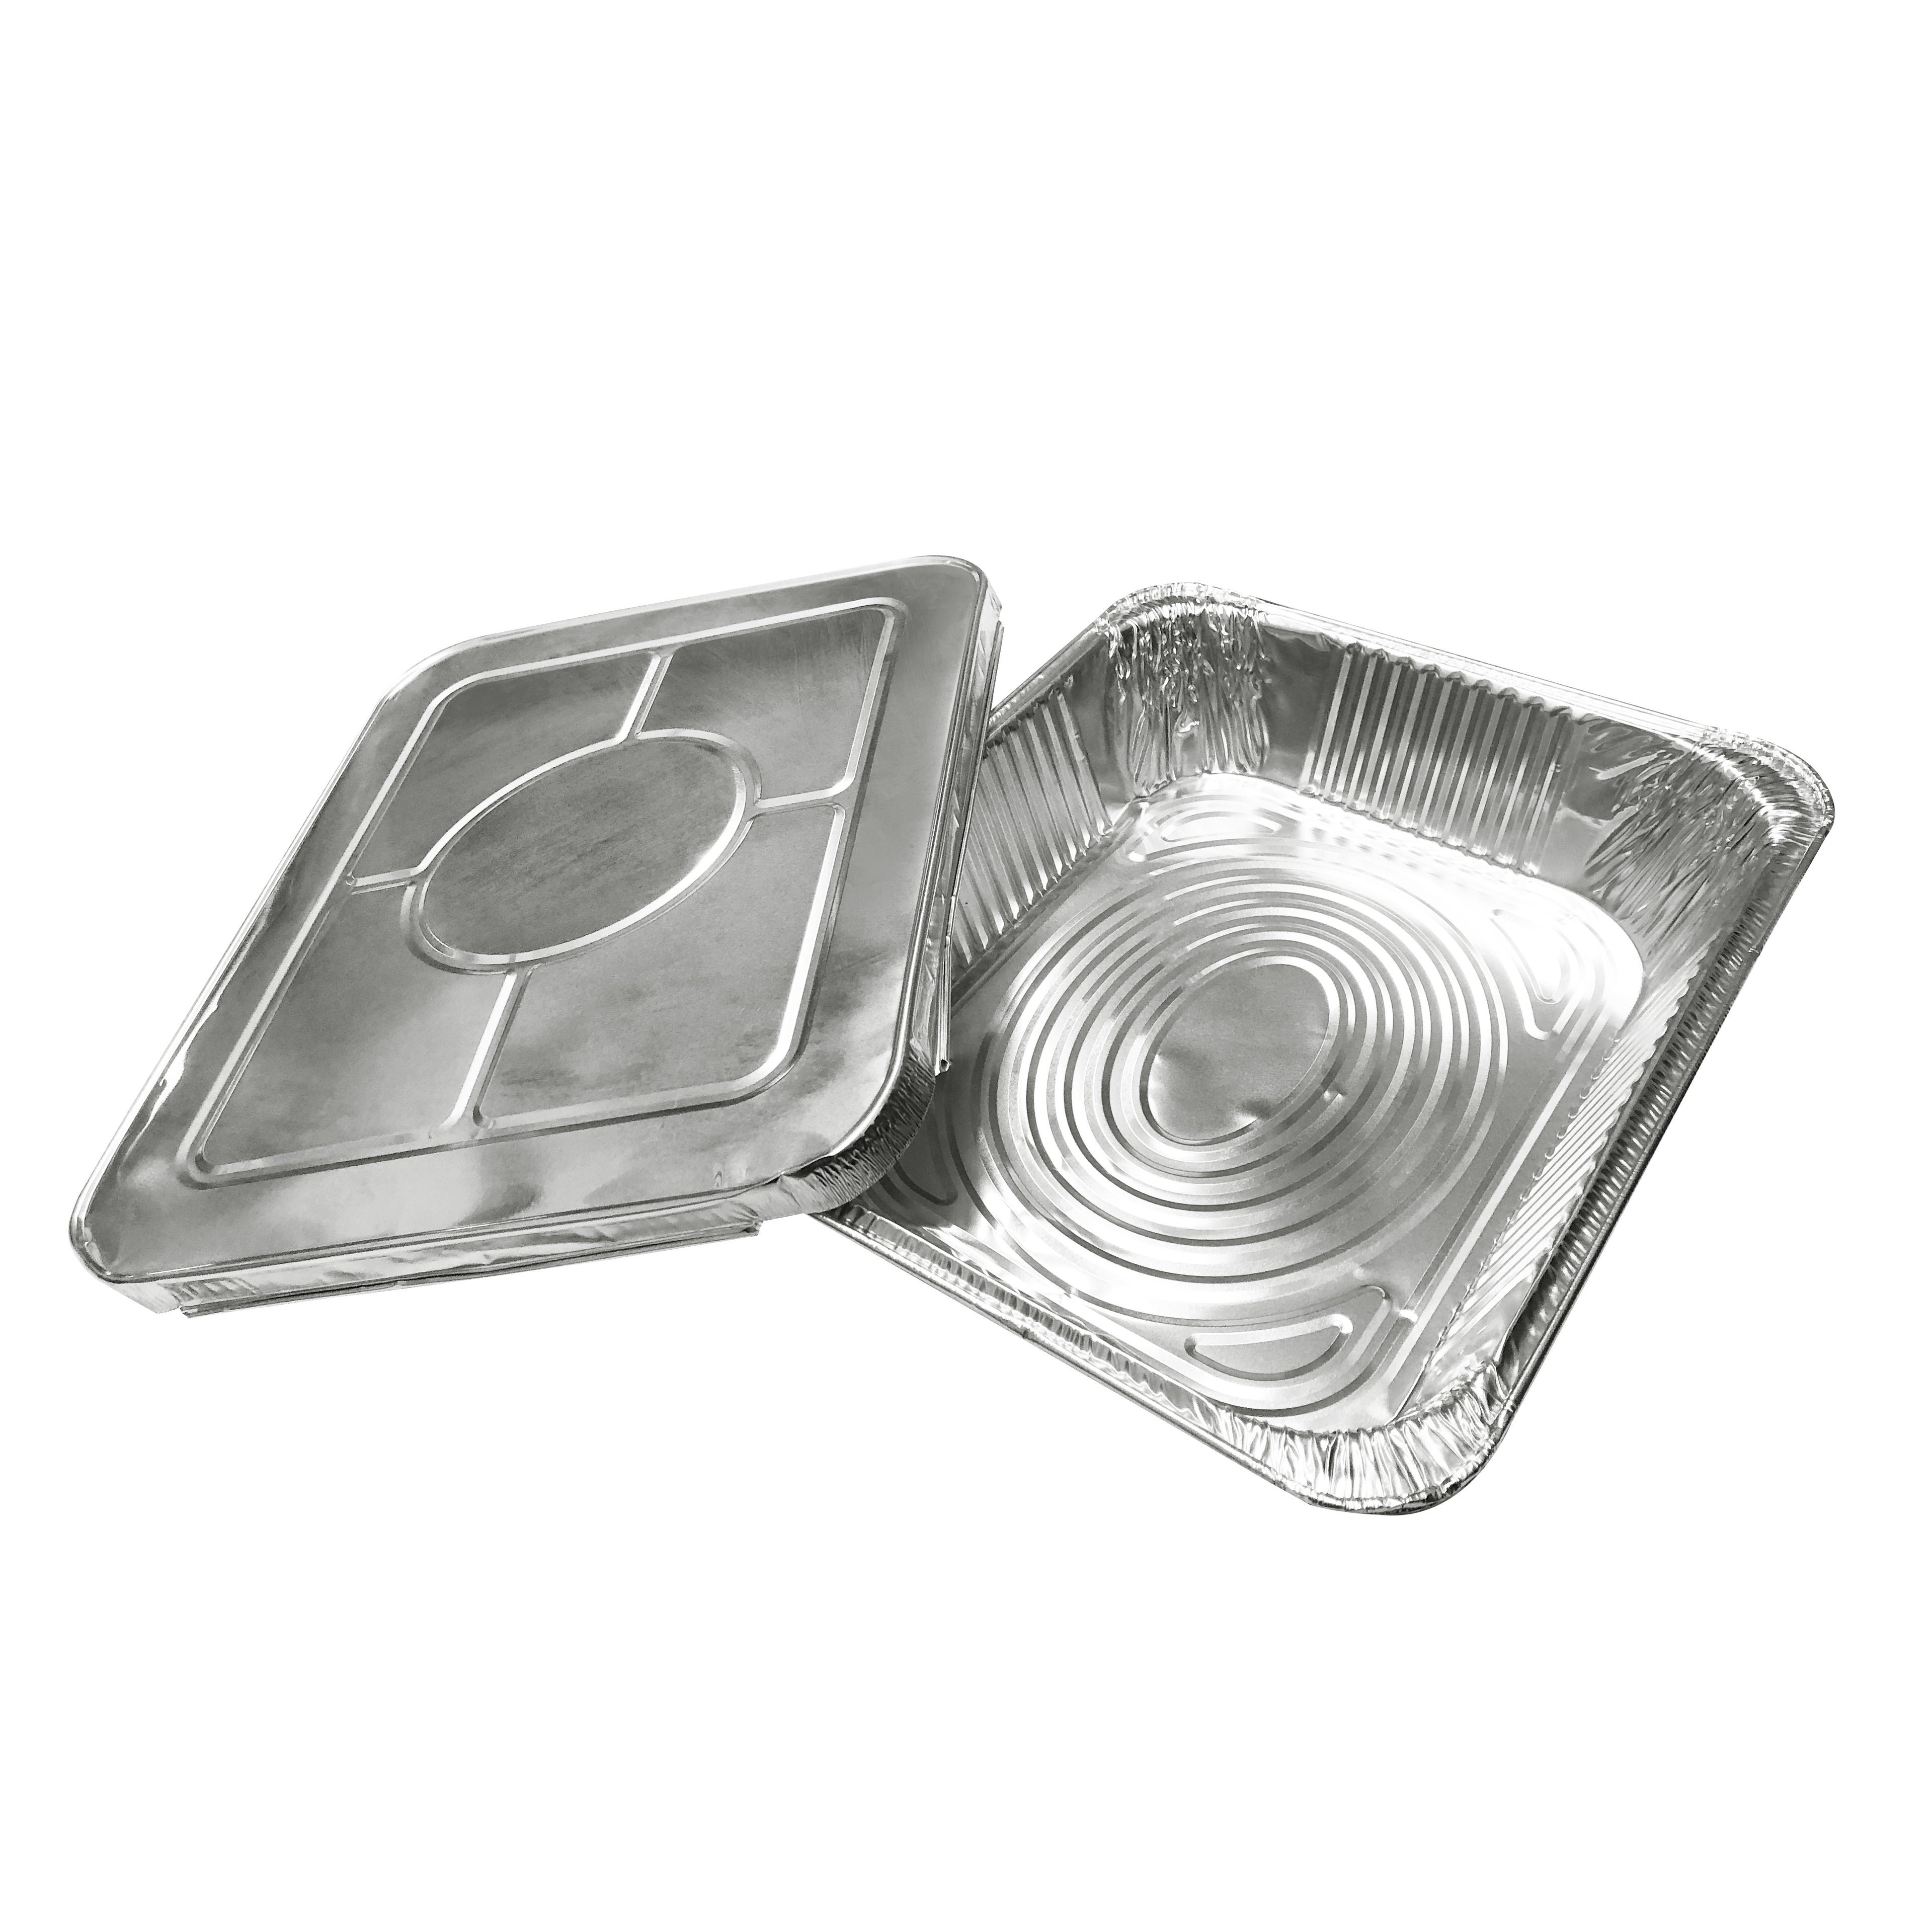 Aluminum Foil Meal Box 錫紙餐盤盒